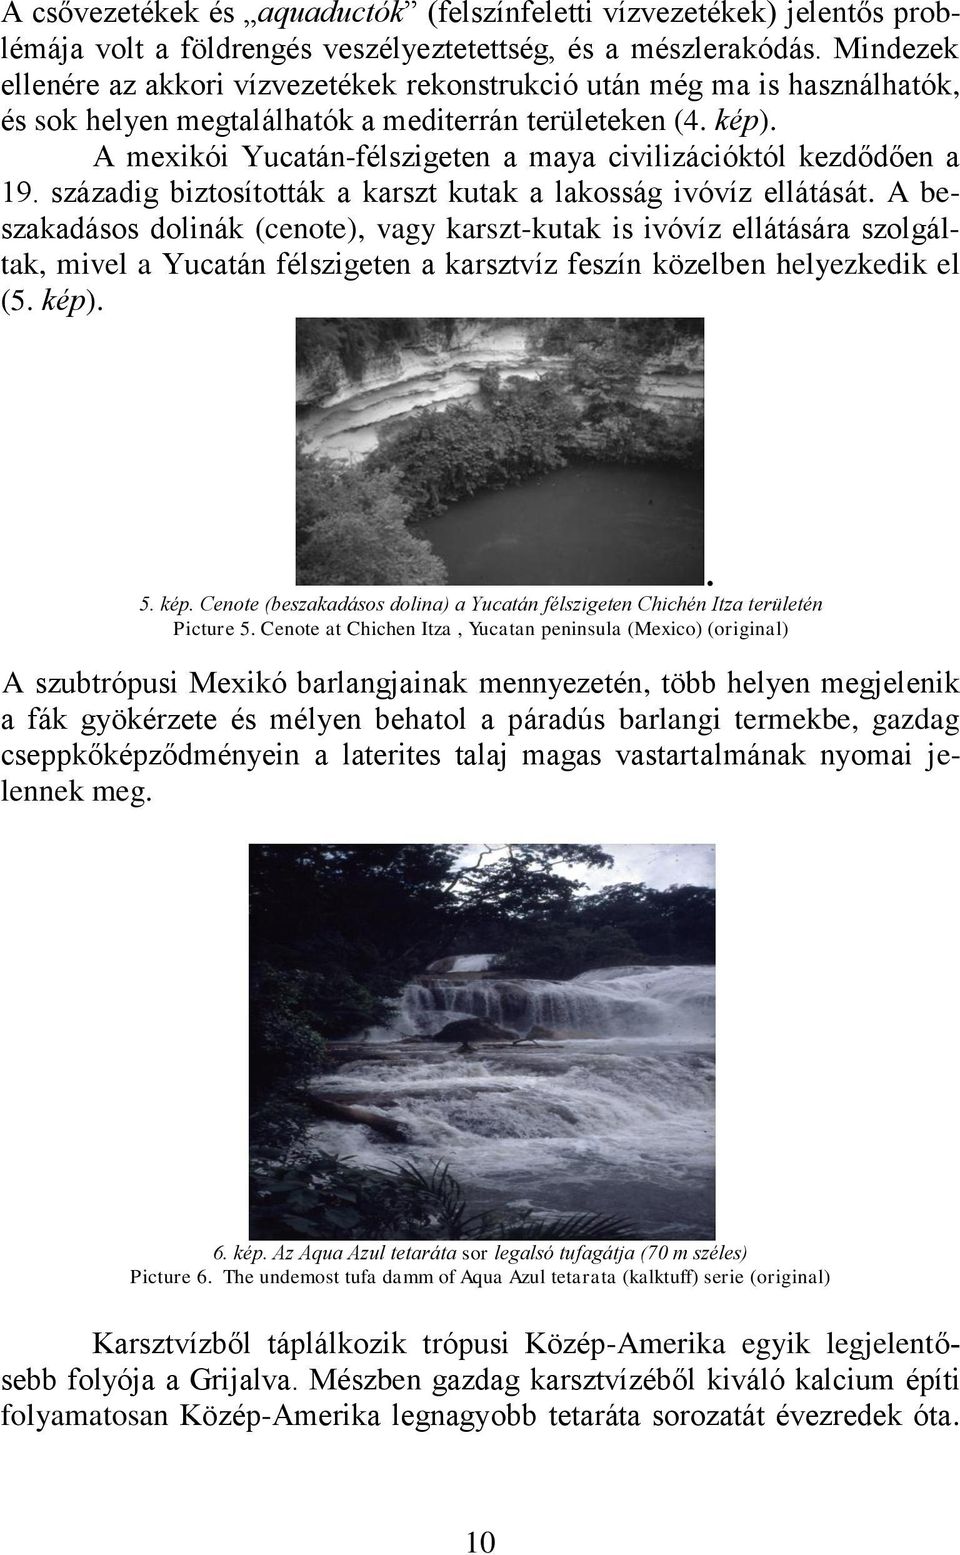 A mexikói Yucatán-félszigeten a maya civilizációktól kezdődően a 19. századig biztosították a karszt kutak a lakosság ivóvíz ellátását.